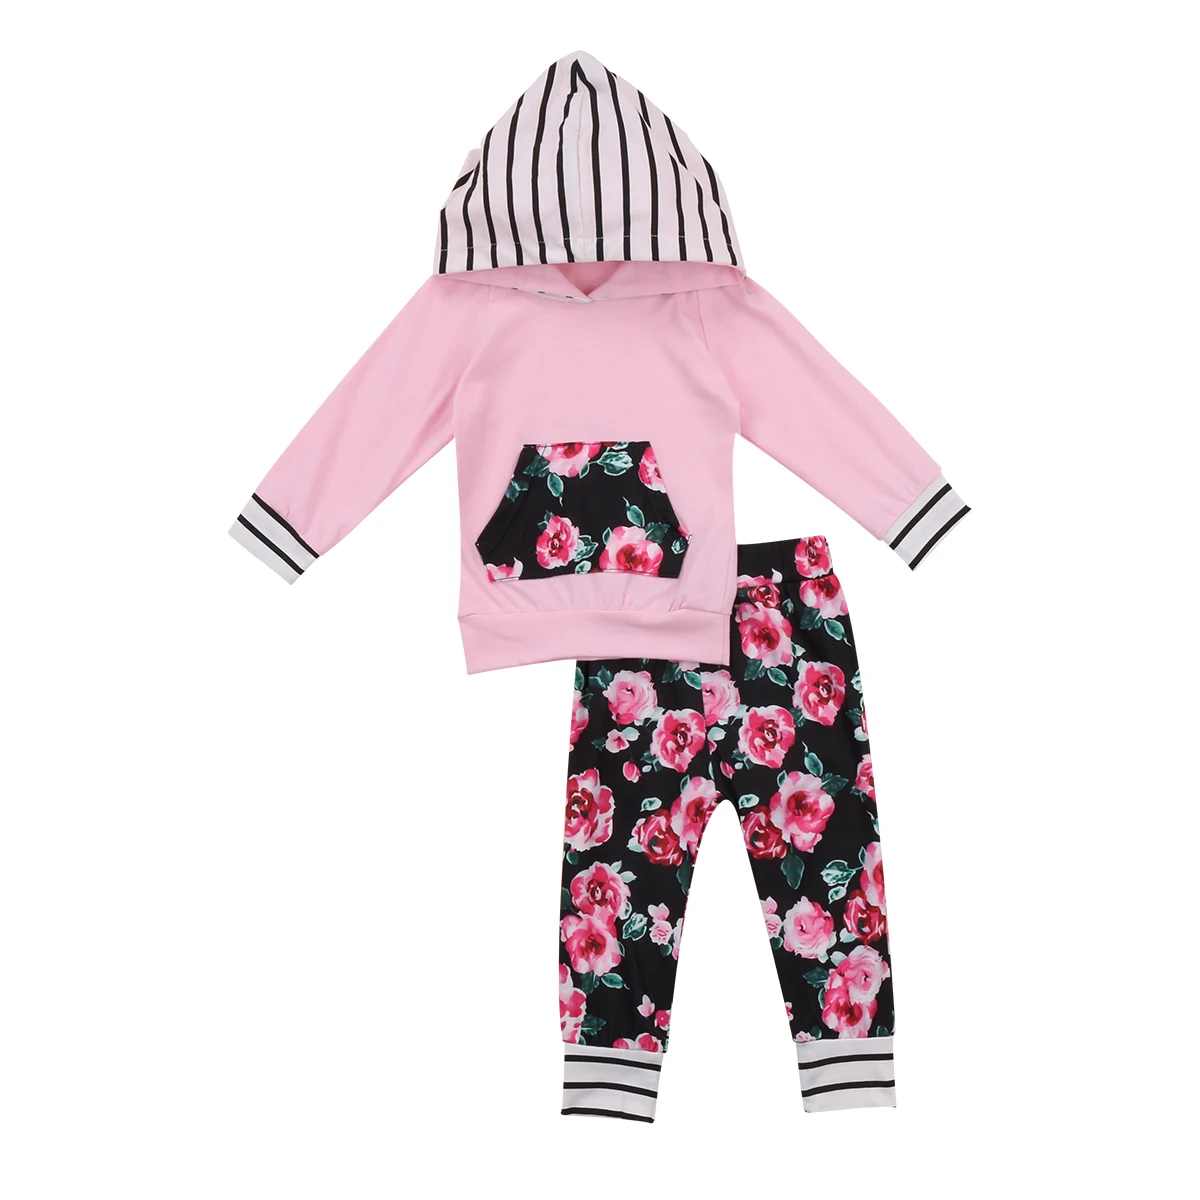 Pudcoco/хлопковая осенняя одежда для новорожденных девочек футболка в полоску с капюшоном и цветочным принтом Топ + штаны с цветочным принтом